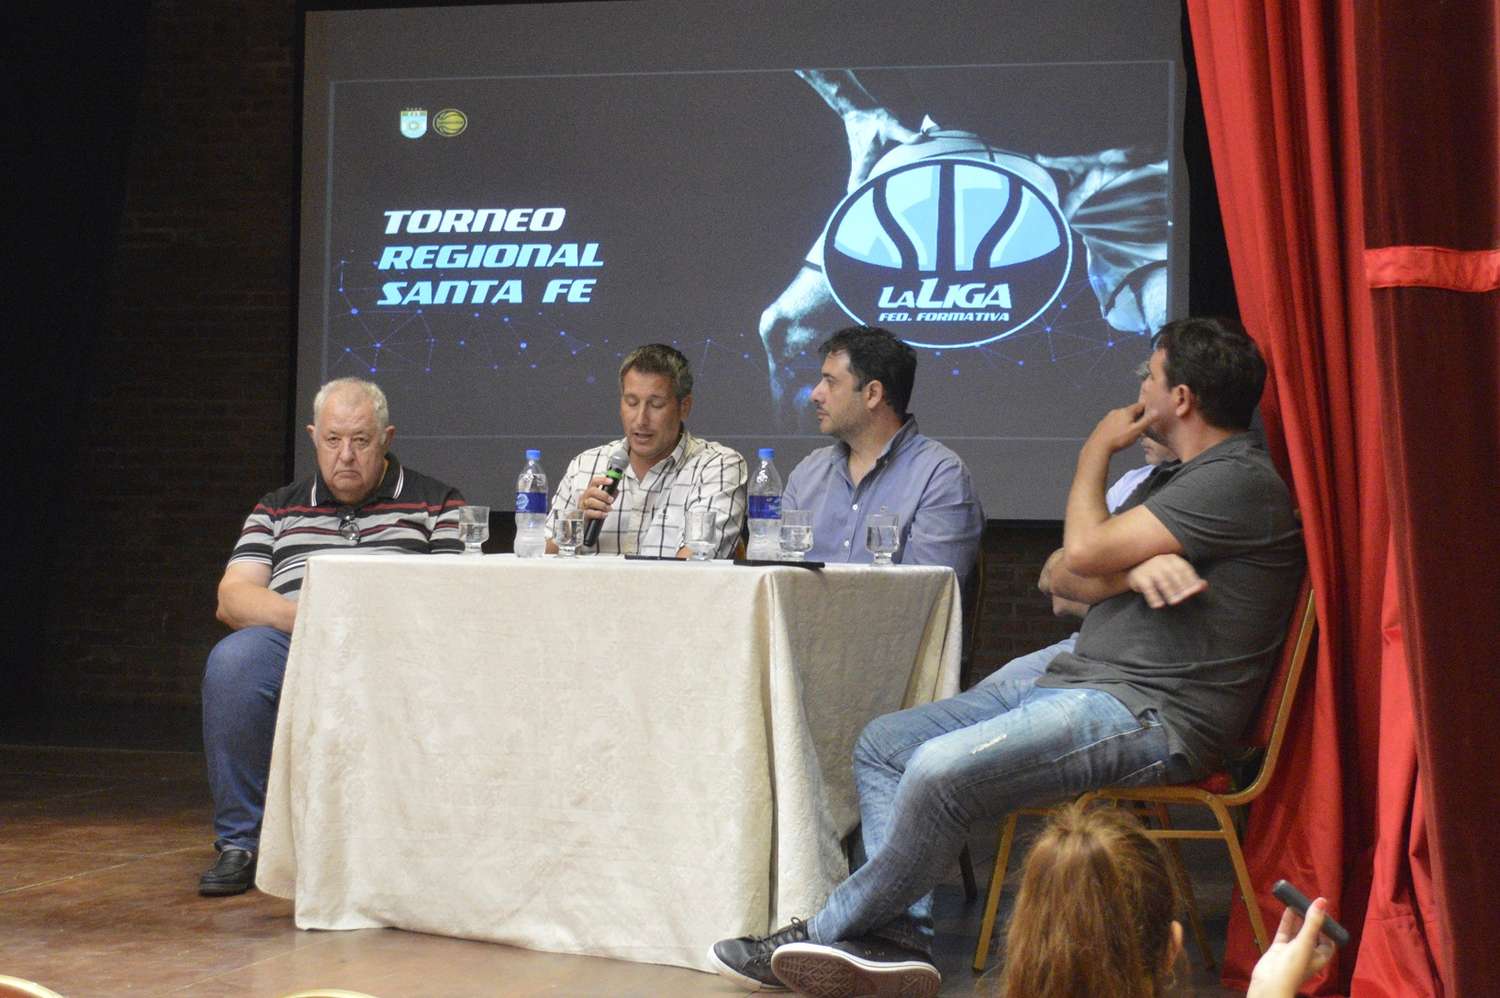 Presentación oficial de los Torneos Regionales de Santa Fe de Básquet